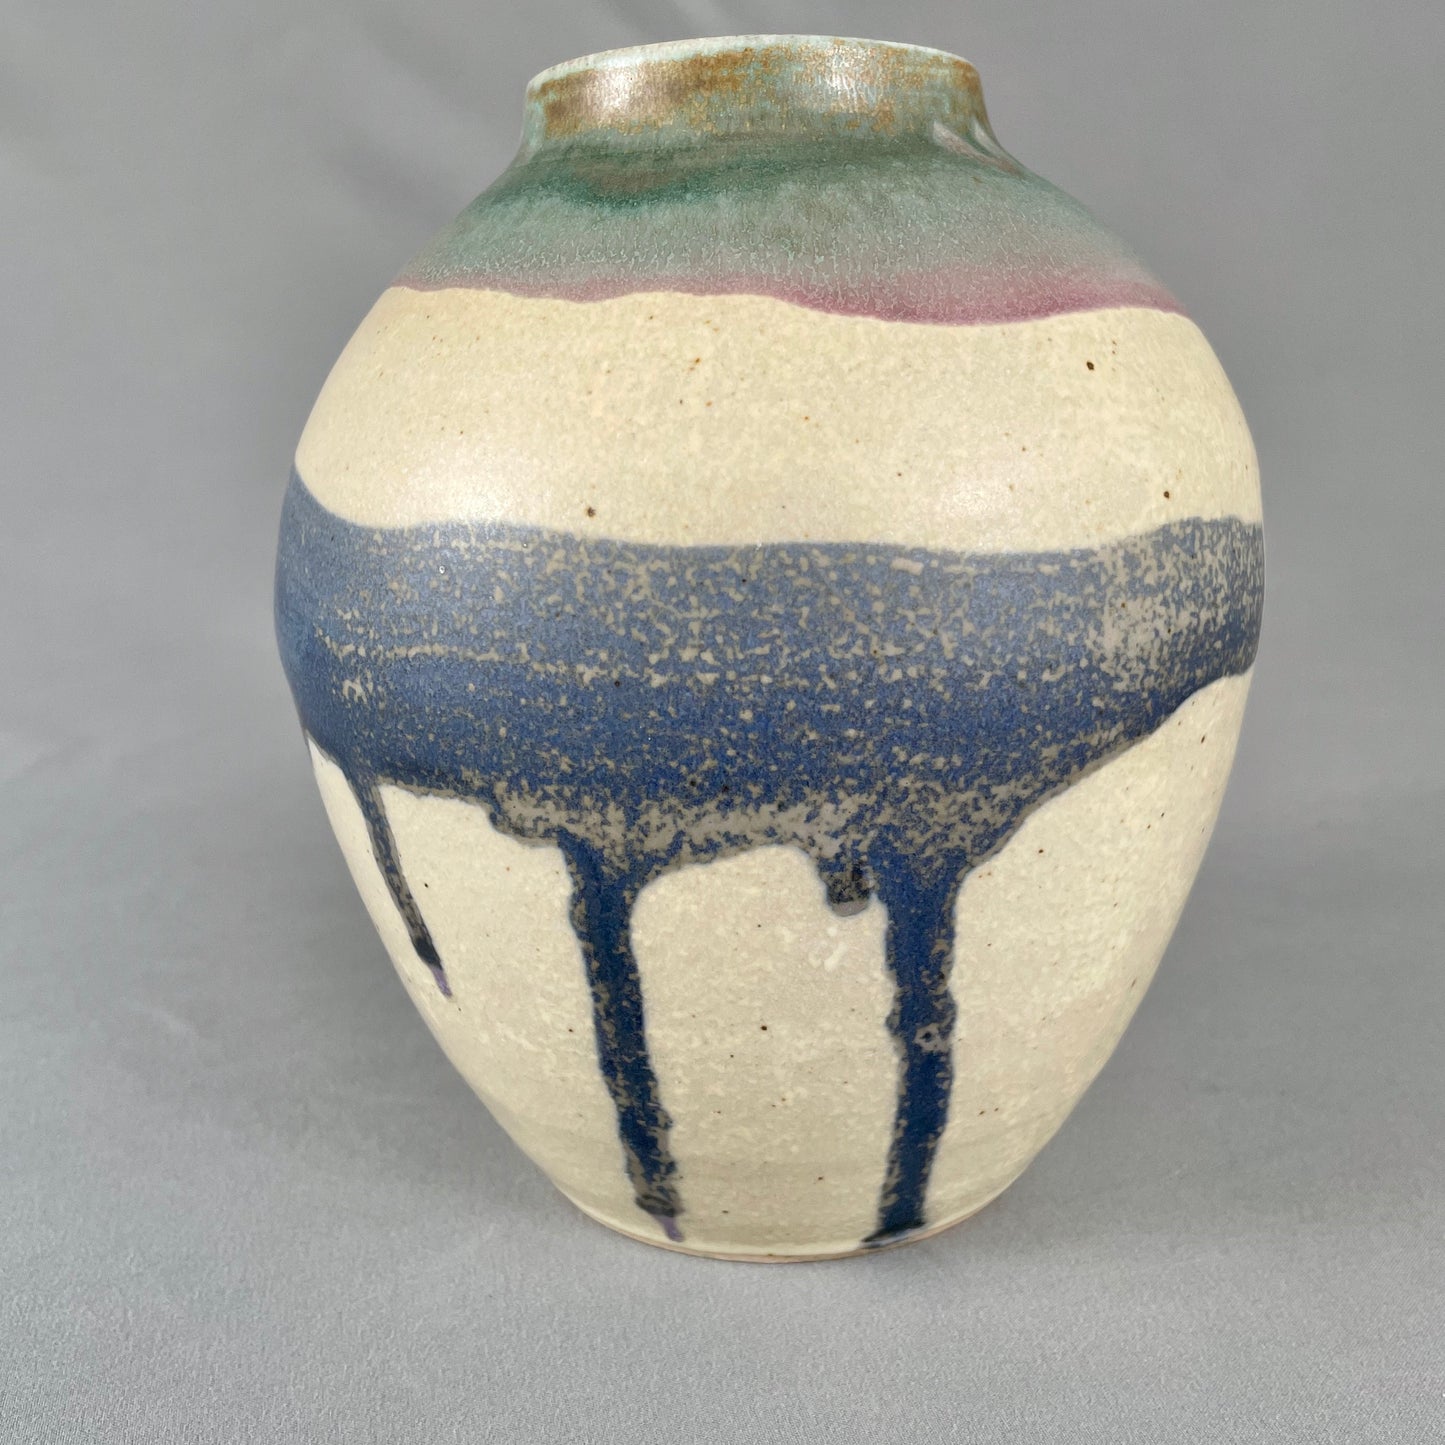 Speckled sand/abstract design vase